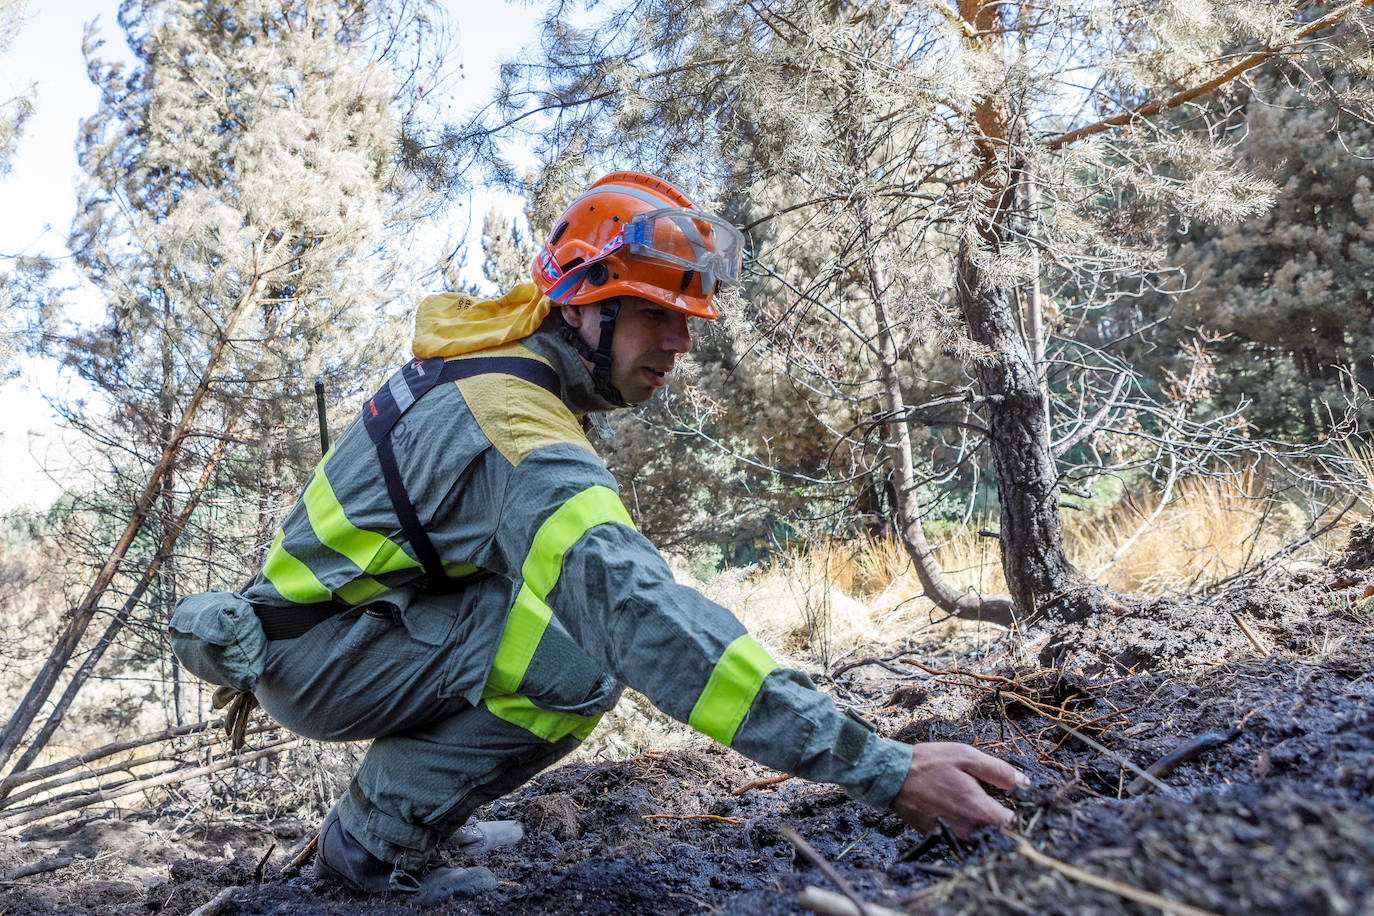 Continúan las labores refrescamiento en el terreno afectado por el incendio de La Granja en Segovia.